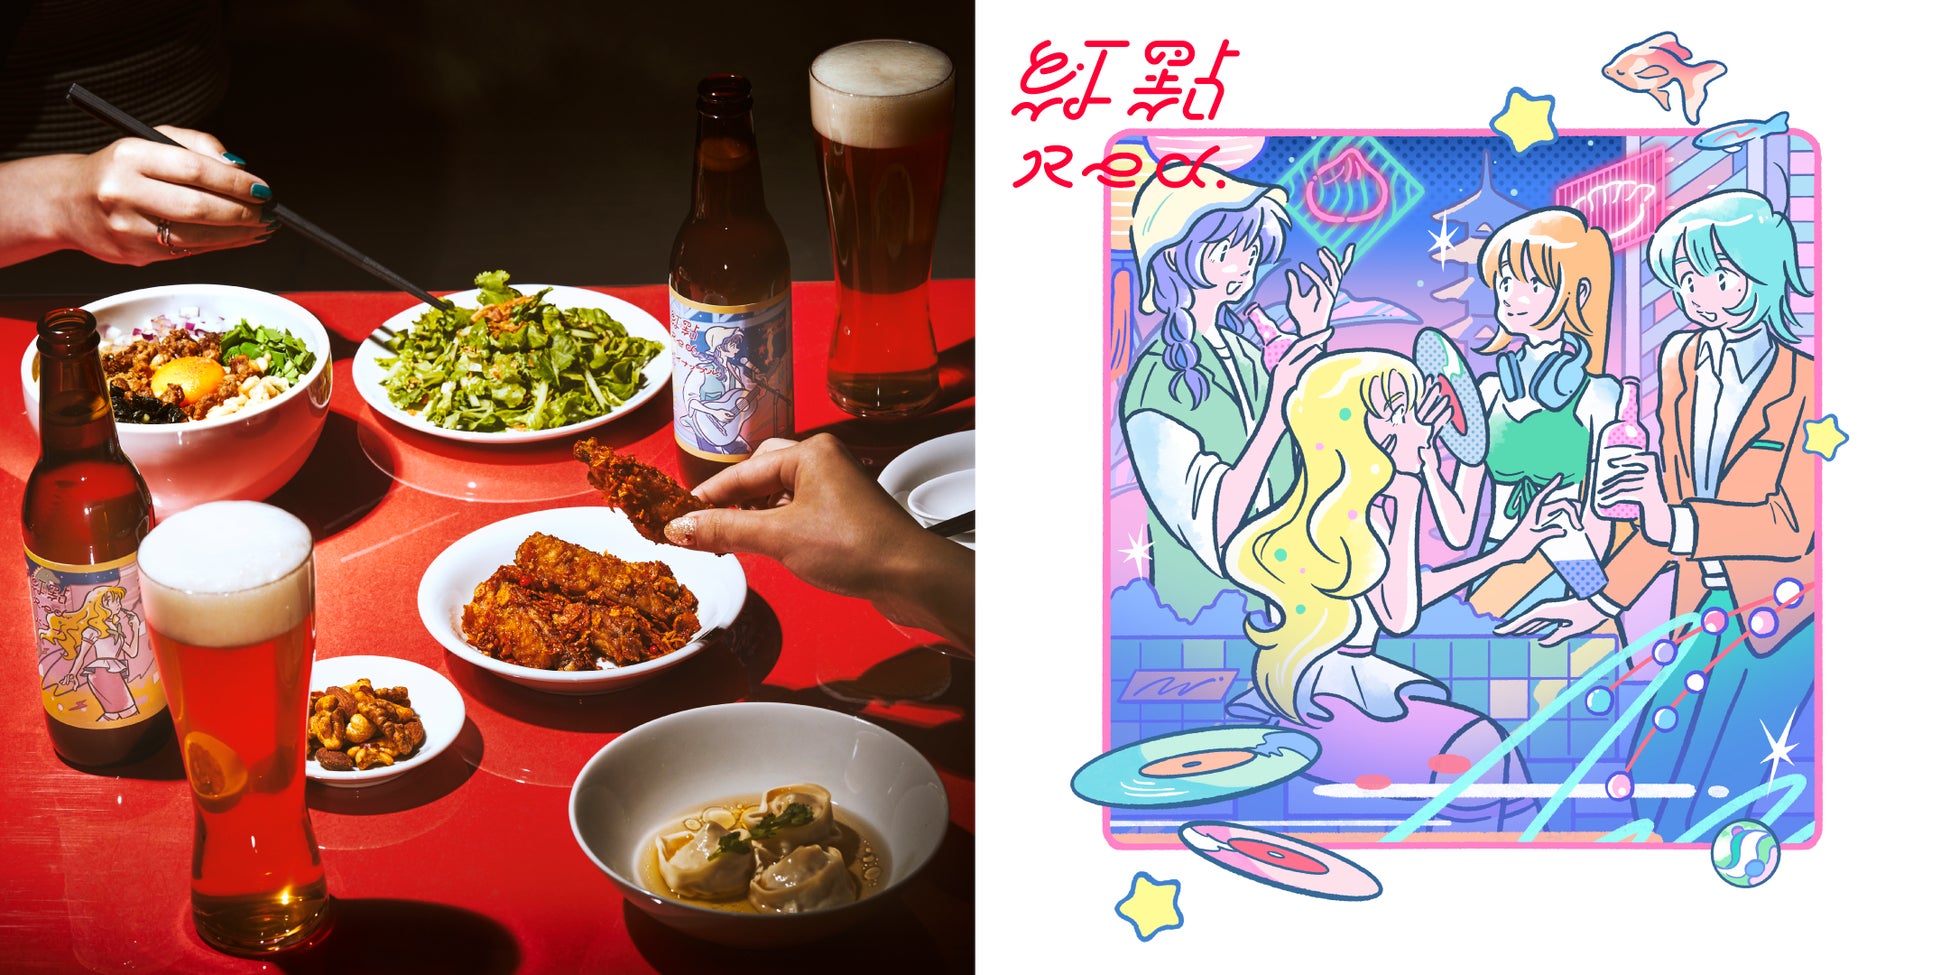 クラフトビール&アジアンフードスタンド「Red.(レッドドット)」がJR新宿駅新南口・ニュウマン新宿 2F エキナカに登場